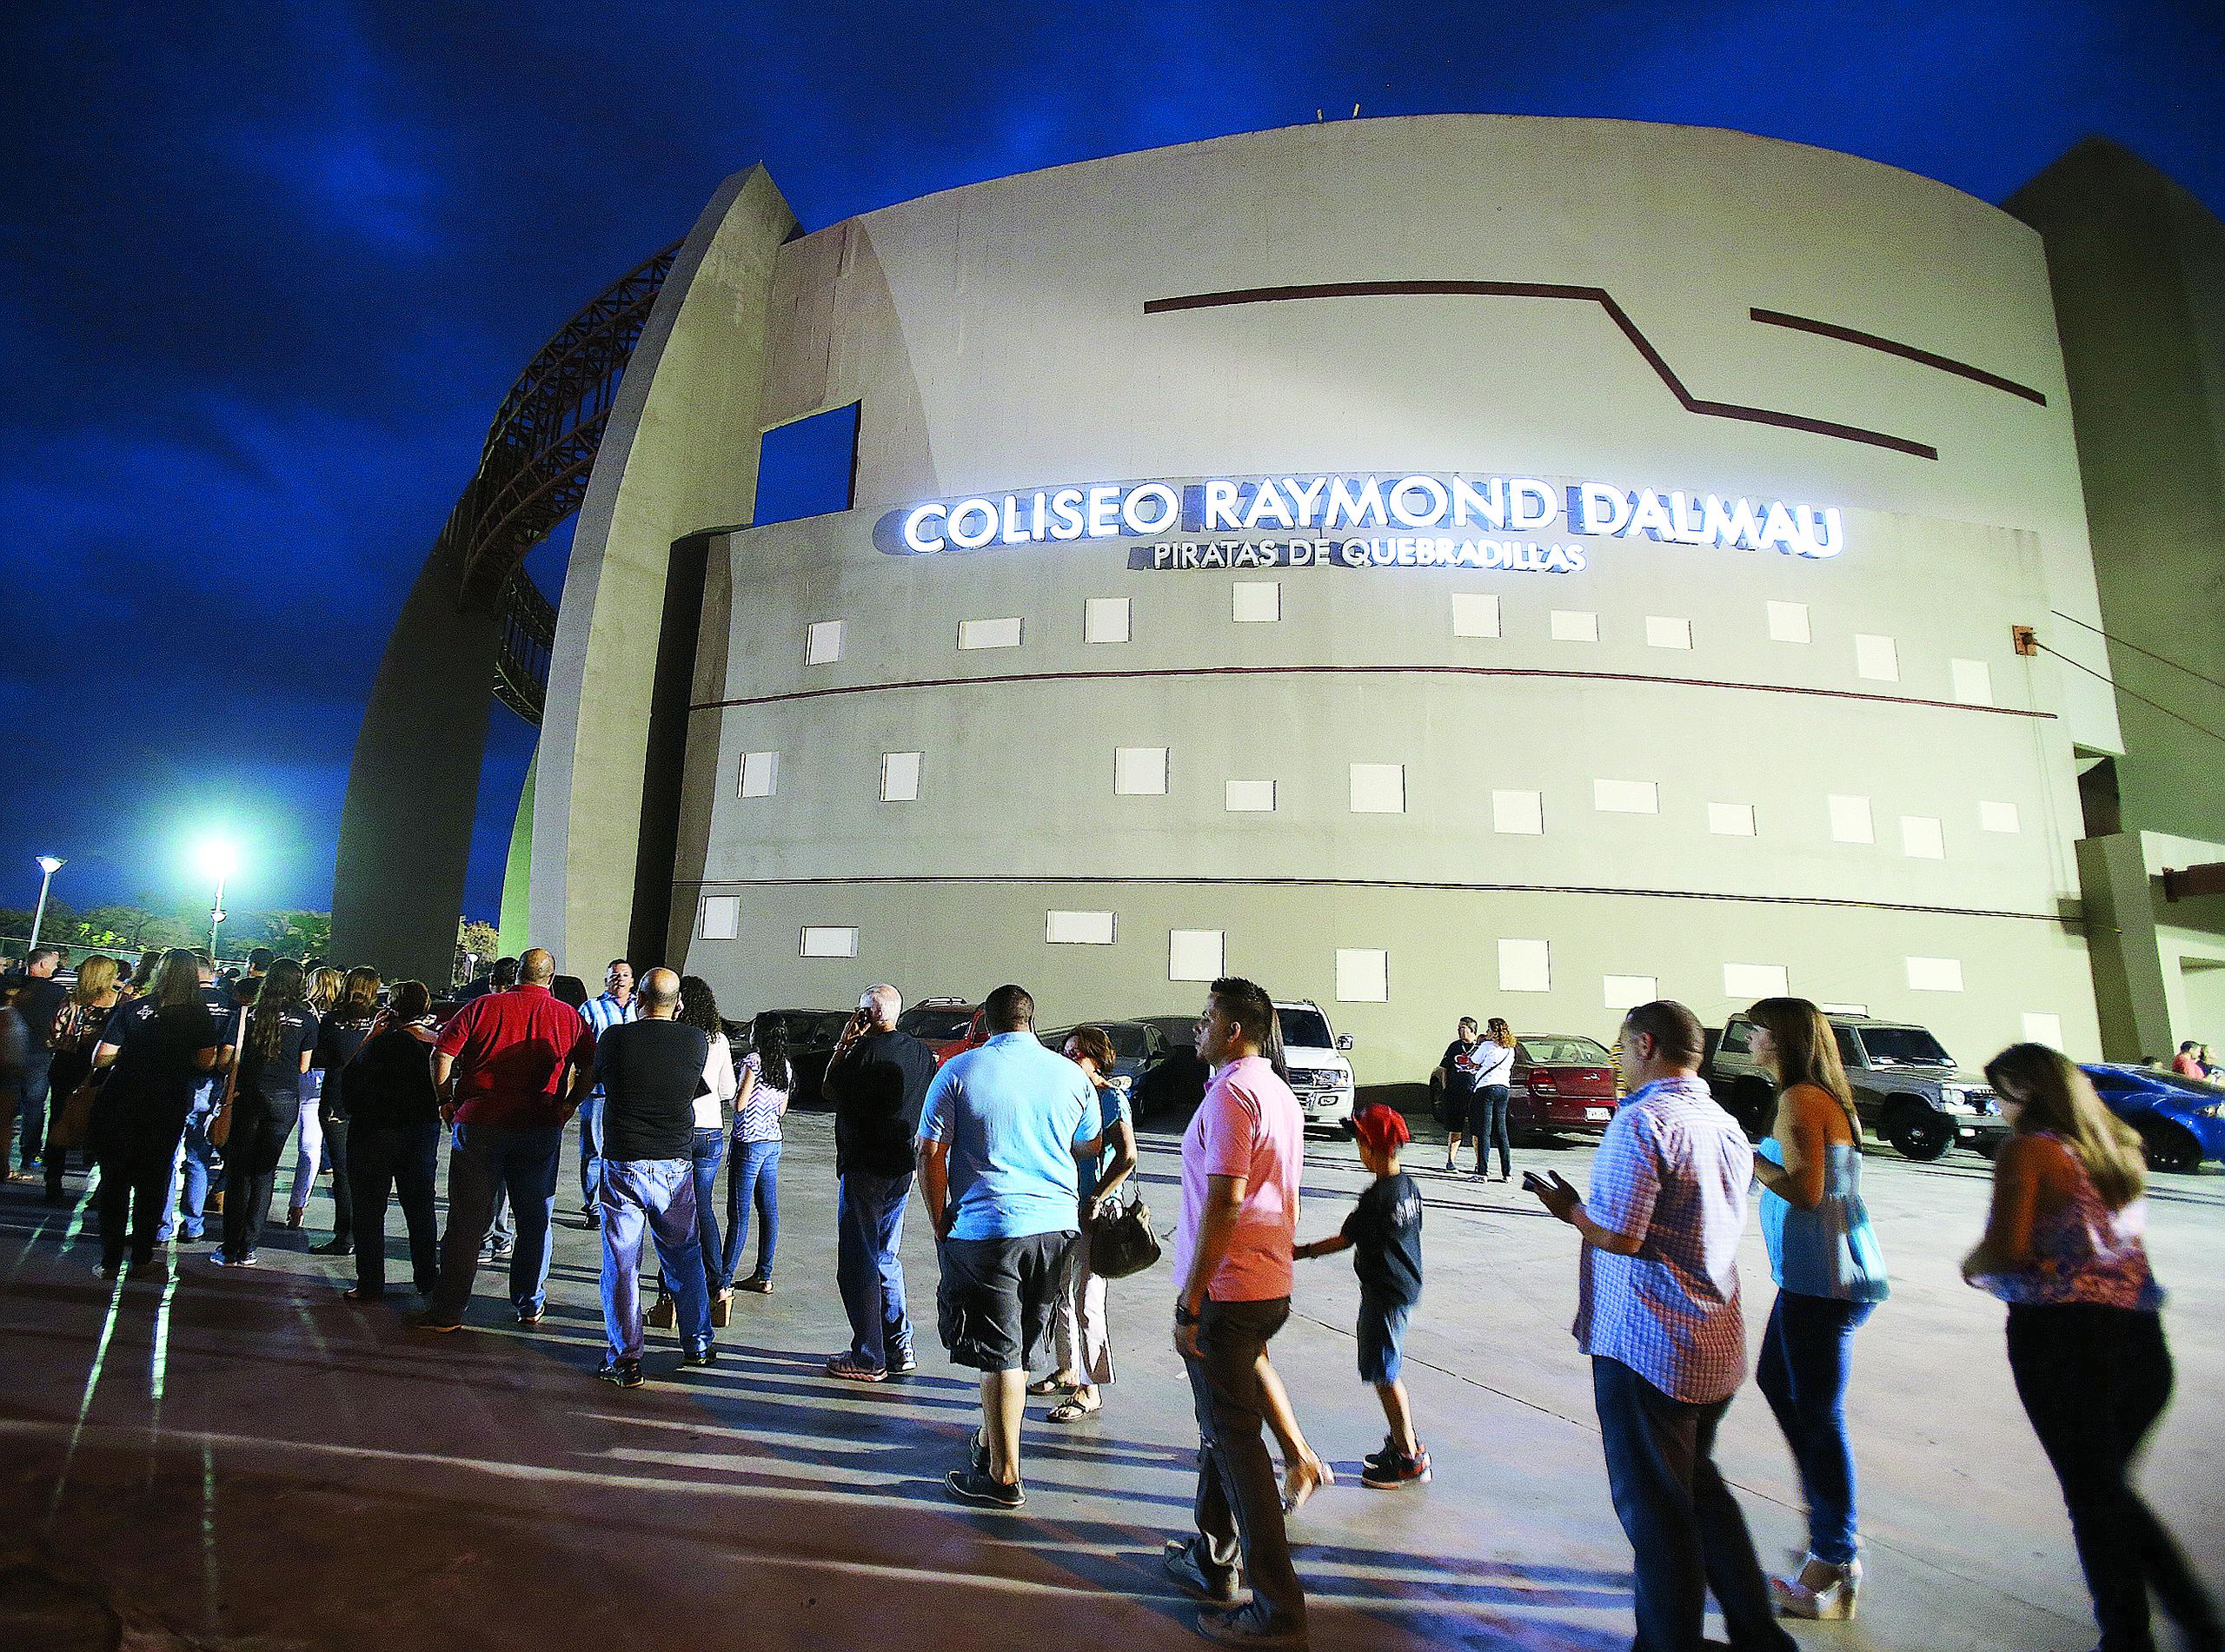 Problemas con el sistema de aires acondicionados del Coliseo Raymond Dalmau provocaron la cancelación de un partido allí el jueves. El Juego de Estrellas del BSN se debe celebrar allí el sábado.